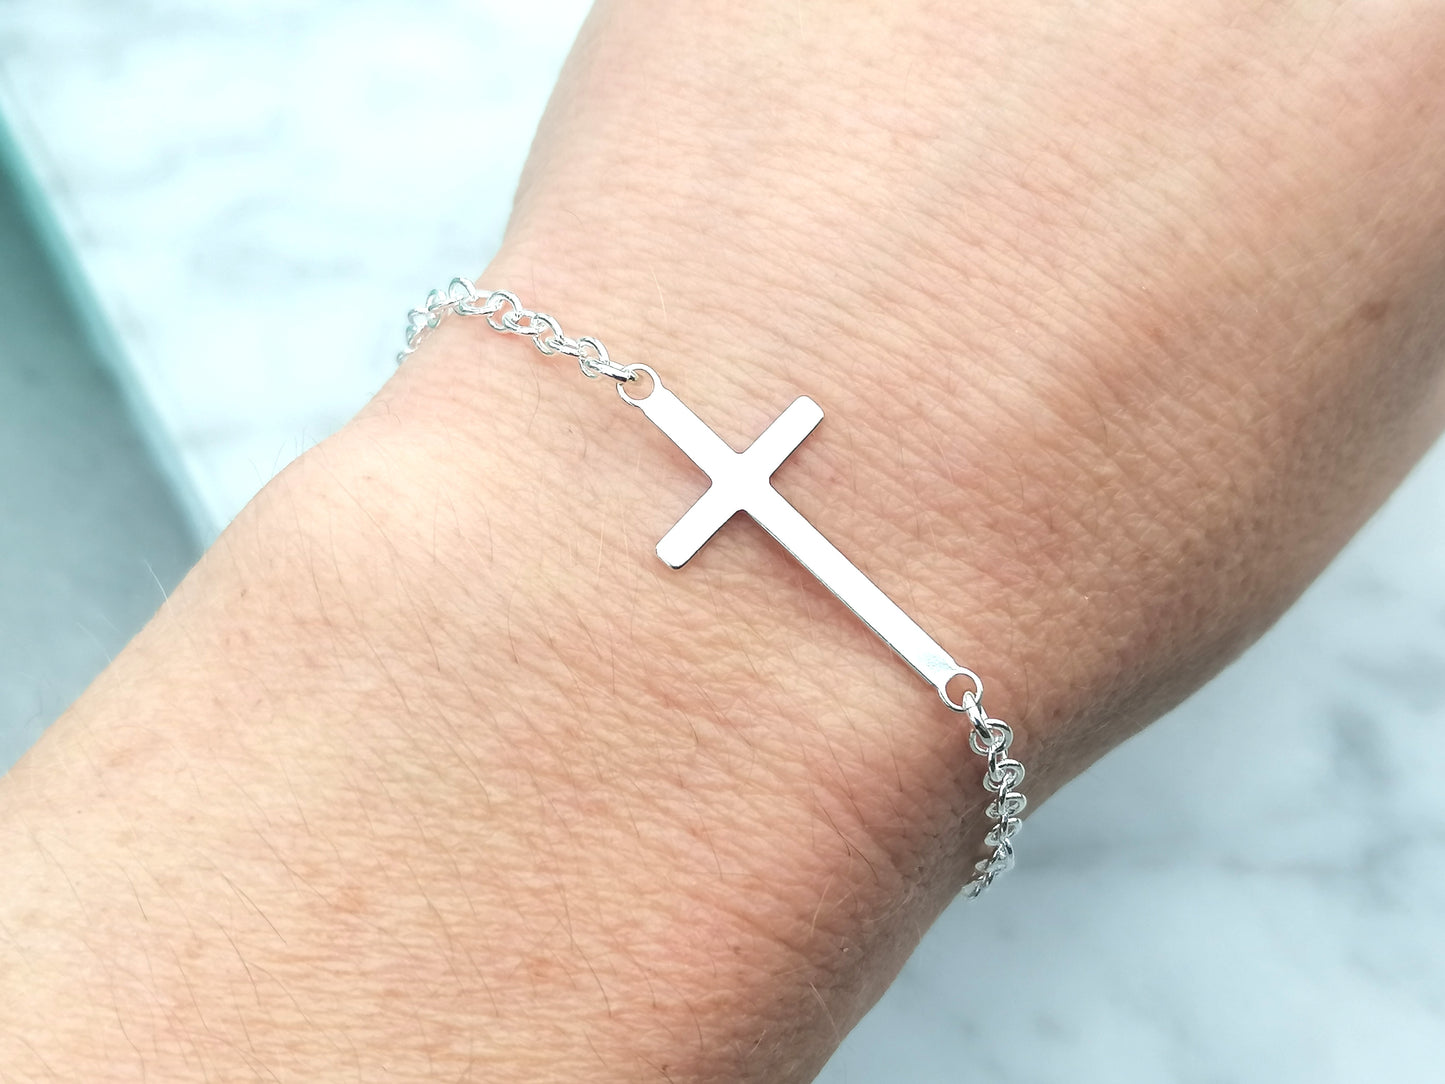 Sideways cross bracelet in sterling silver, adjustable.